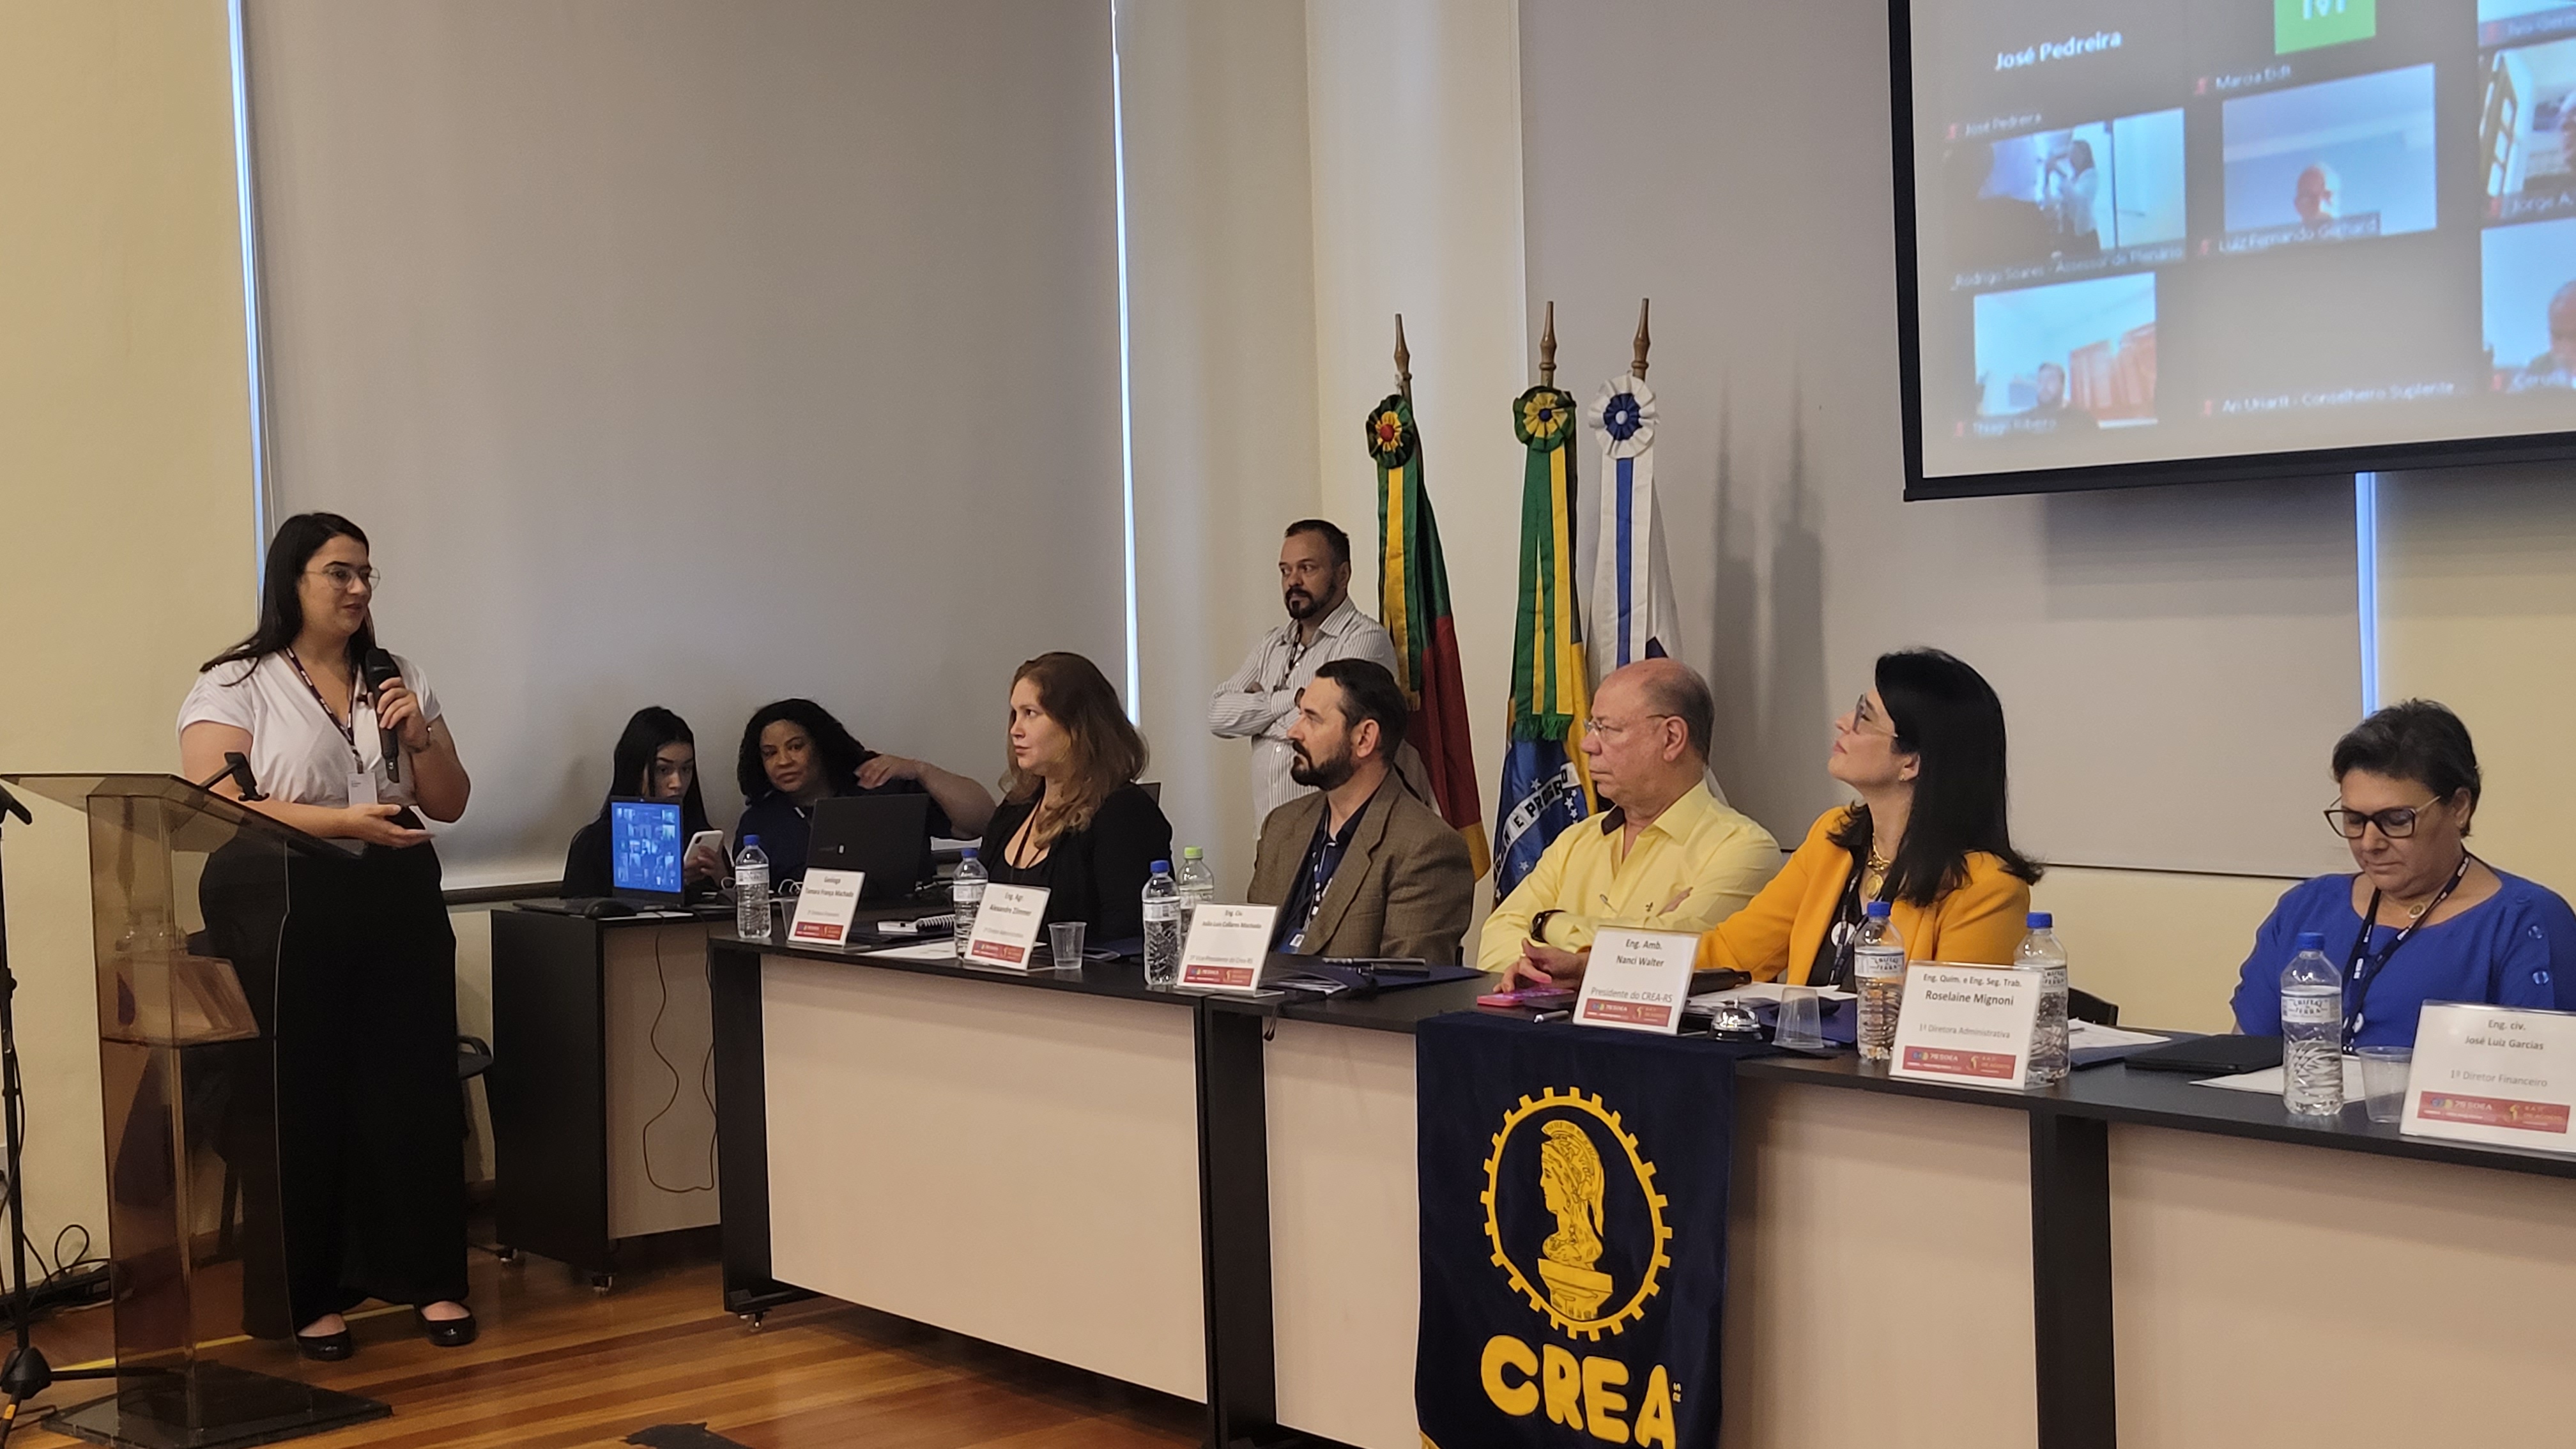 Presente na Plenária, Andressa Torres, acadêmica de Agronomia da Universidade Federal do Rio Grande do Sul e representa a UFRGS no CREAjr-RS